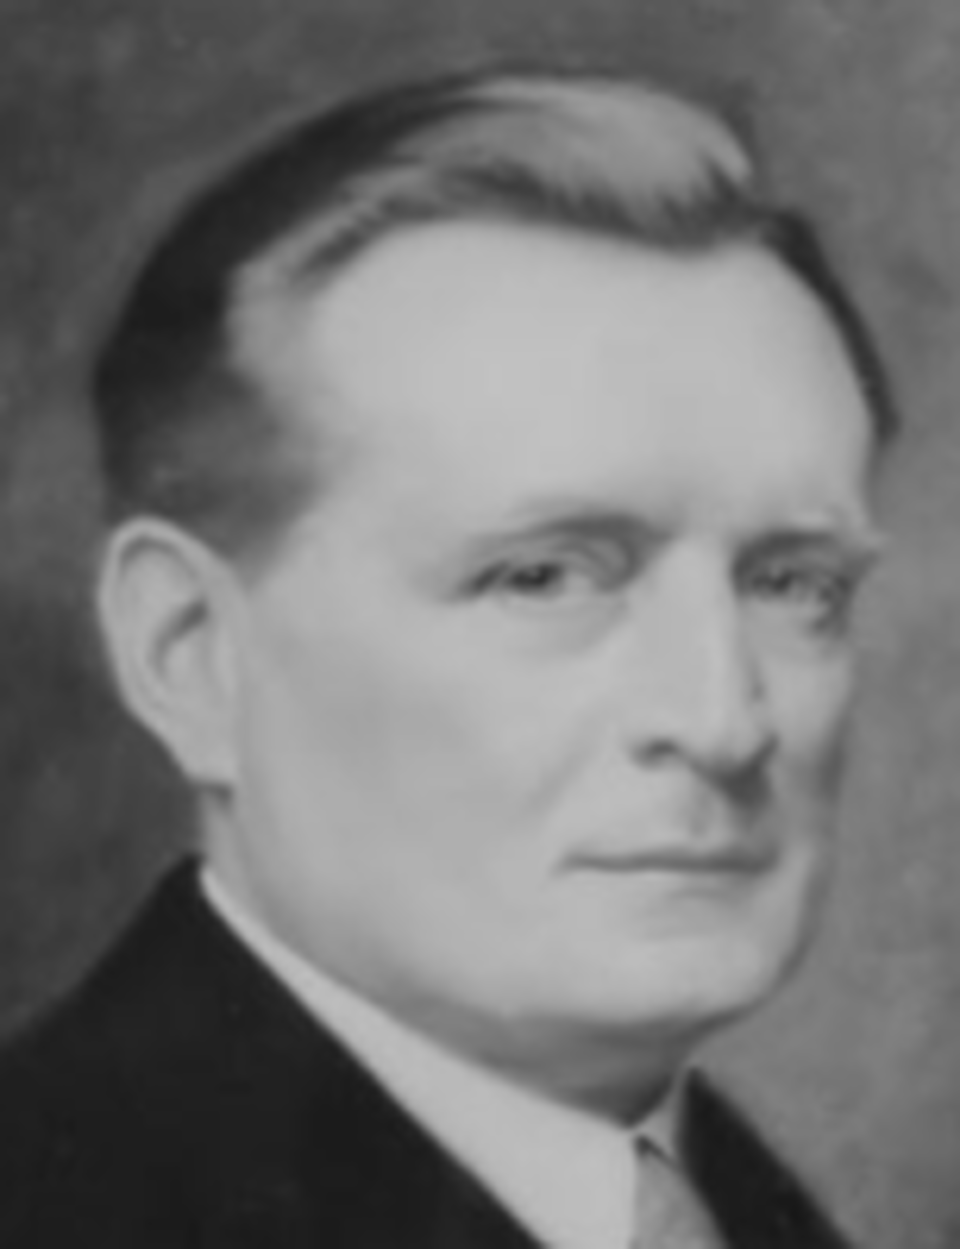 Ifj. Kauser József (1881-1940) 1930 körül (Hermann Baum: Kauser – kőfaragók és építészek, 2020. 42. o.)